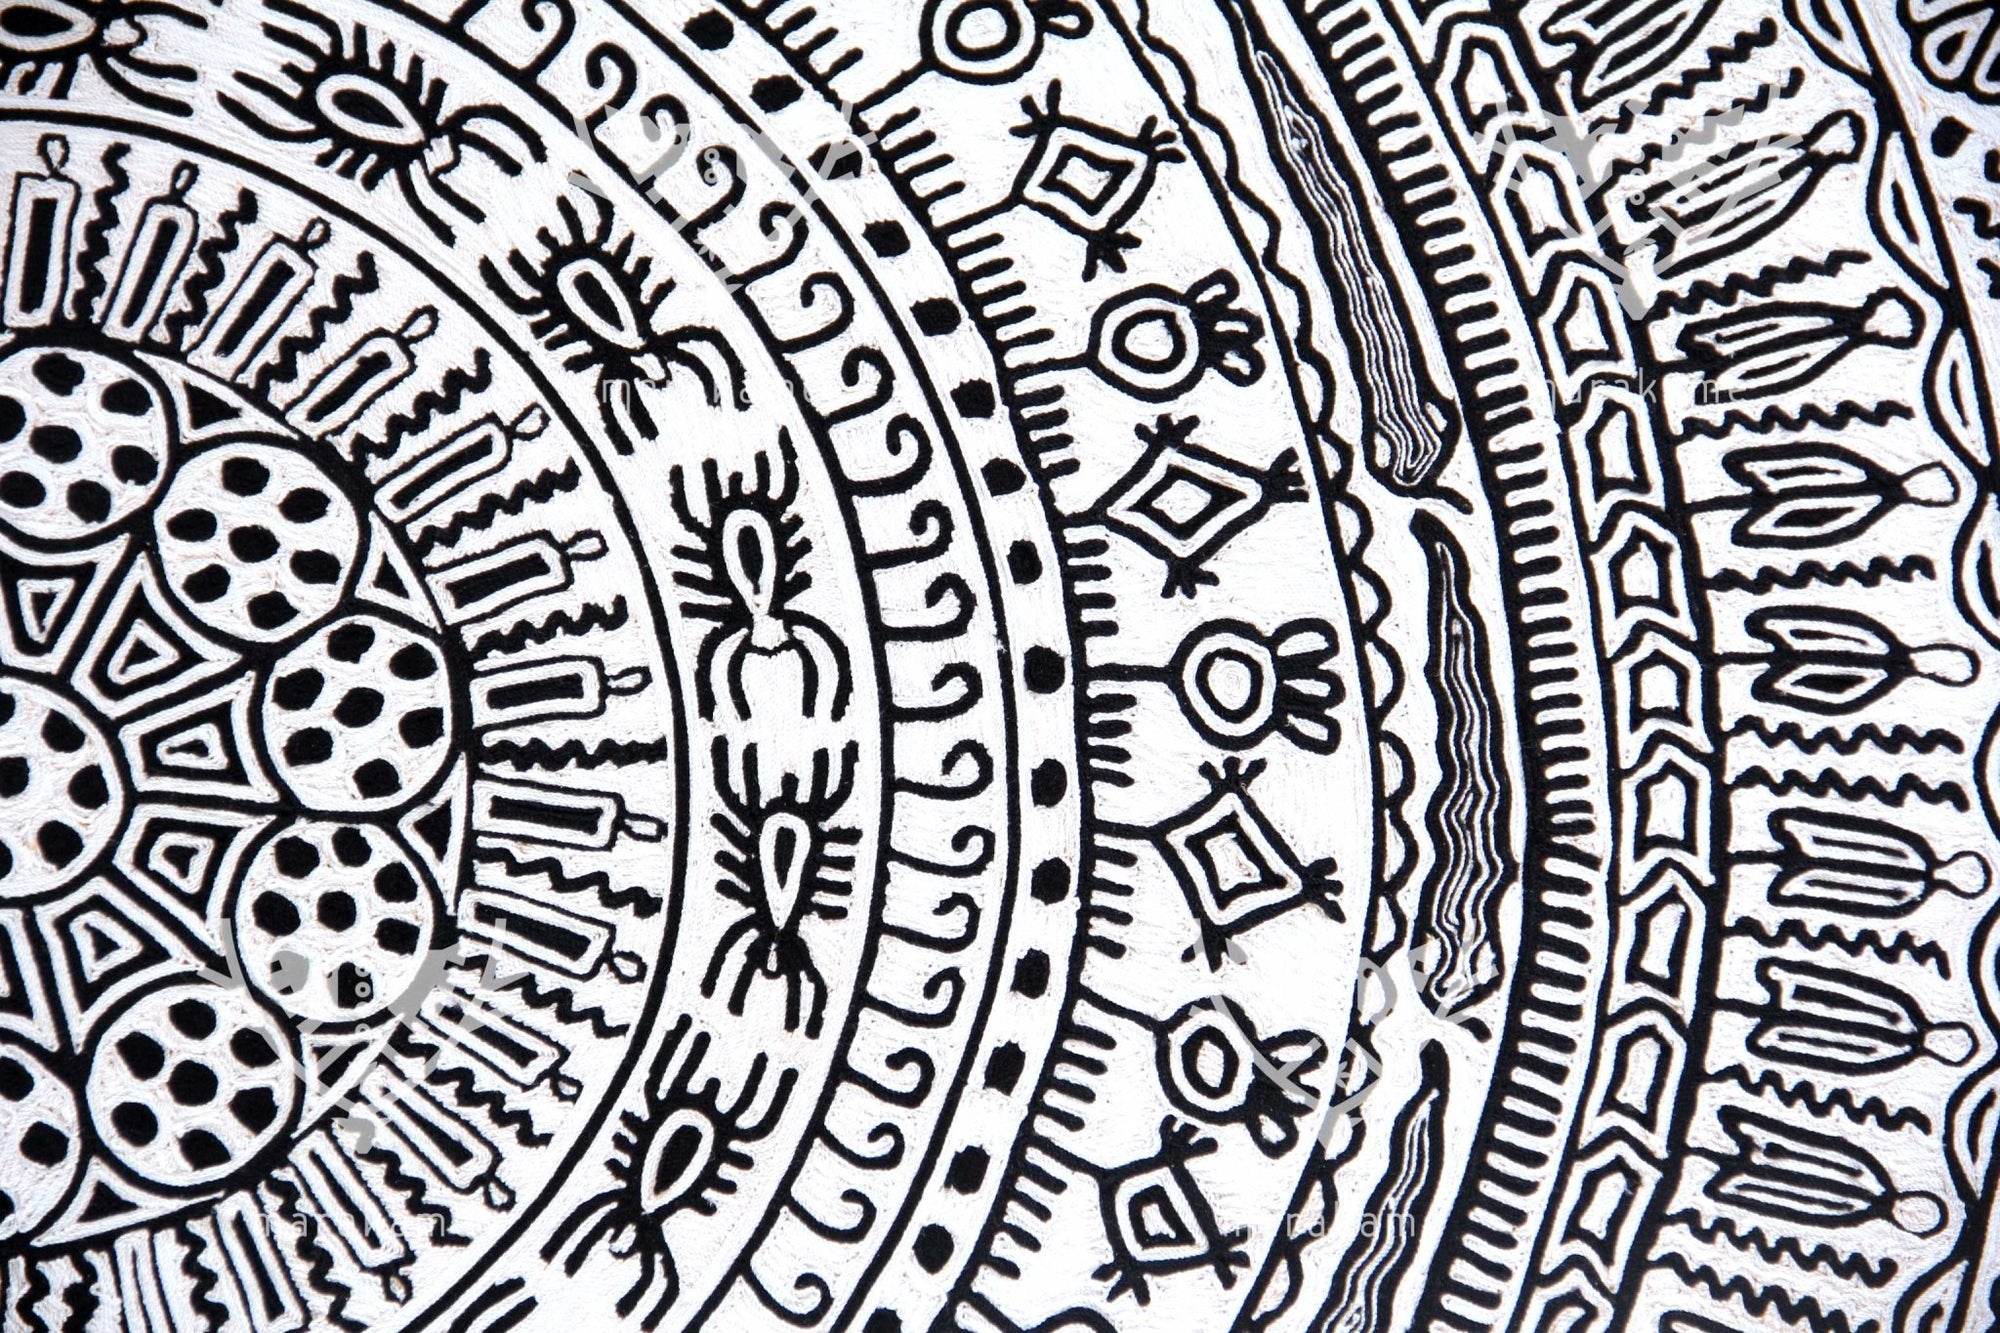 ウーステッド・ウイチョル・サークルのニーリカ - エンピオタダ吸盤 - 160 cm。 - ウイチョル族の芸術 - マラカメ